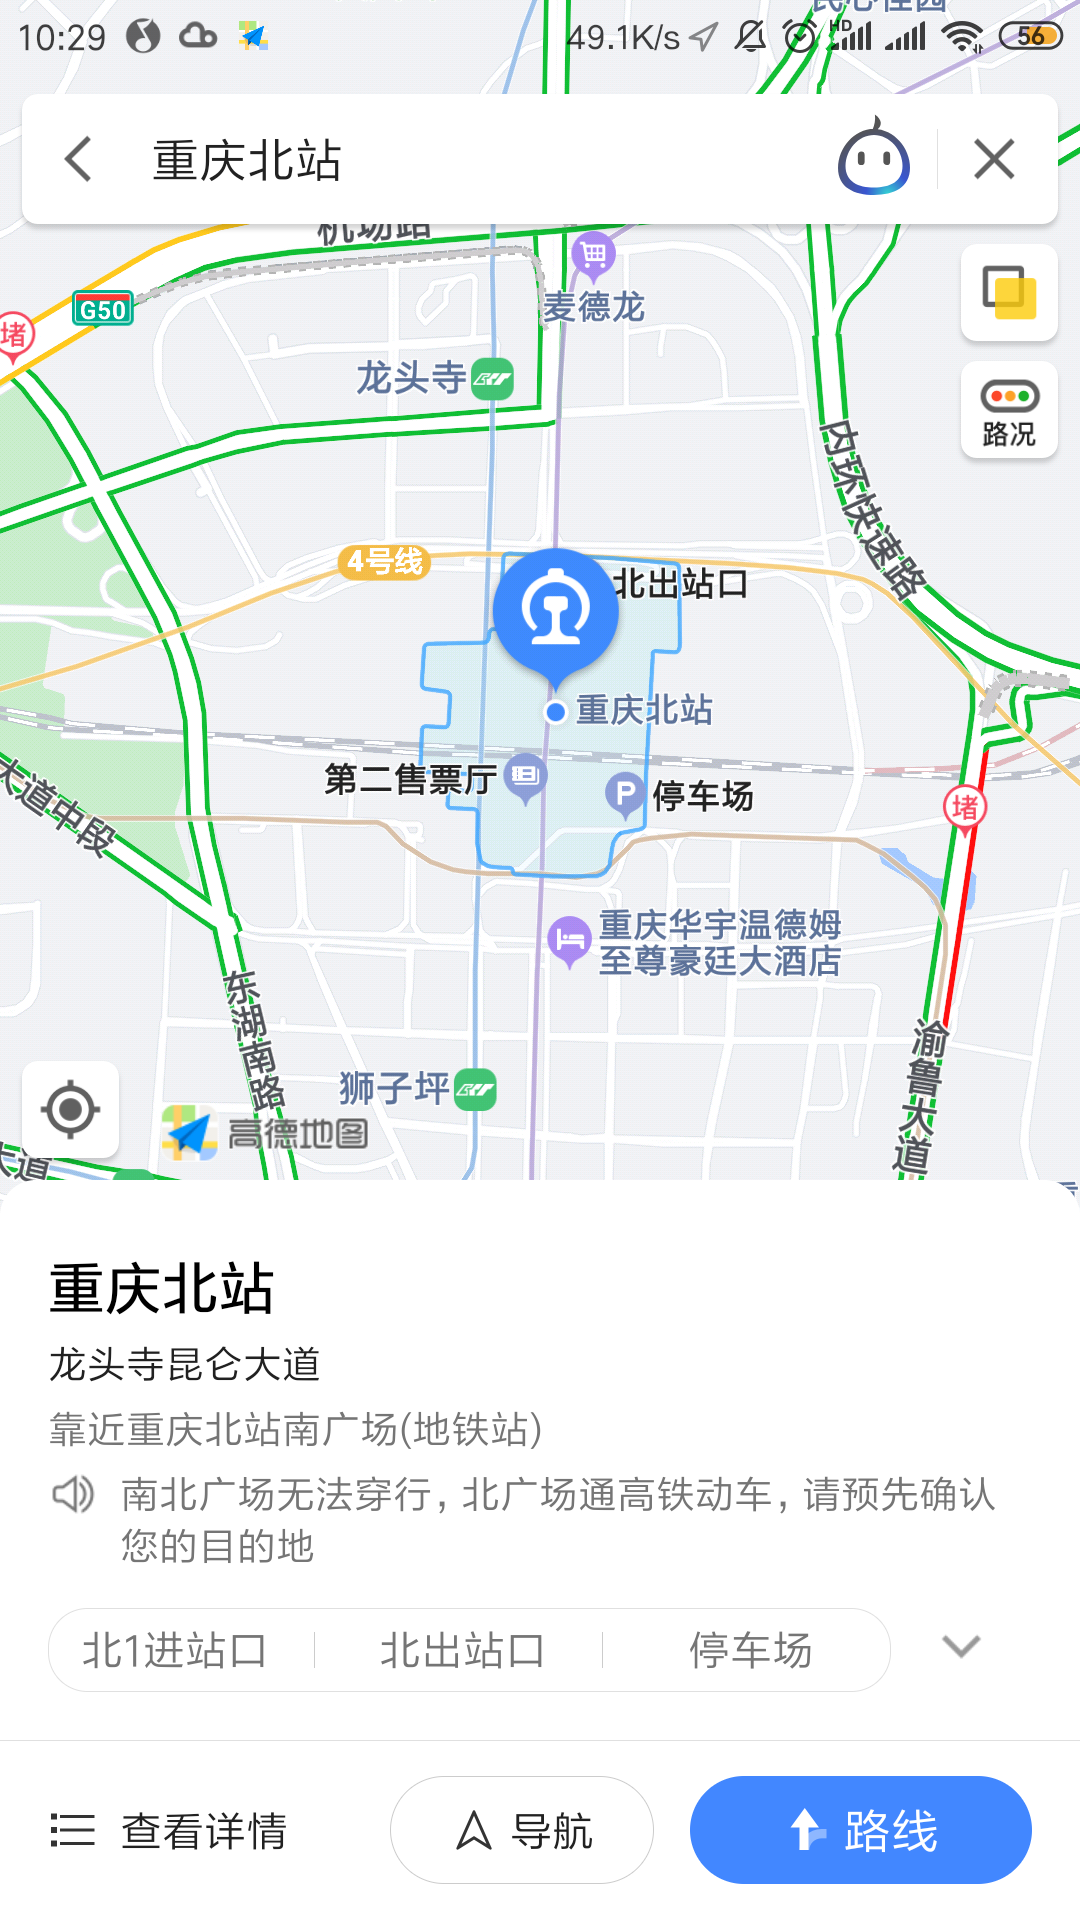 重庆火车站春运发送旅客680.2万人次，恢复至2019年同期九成